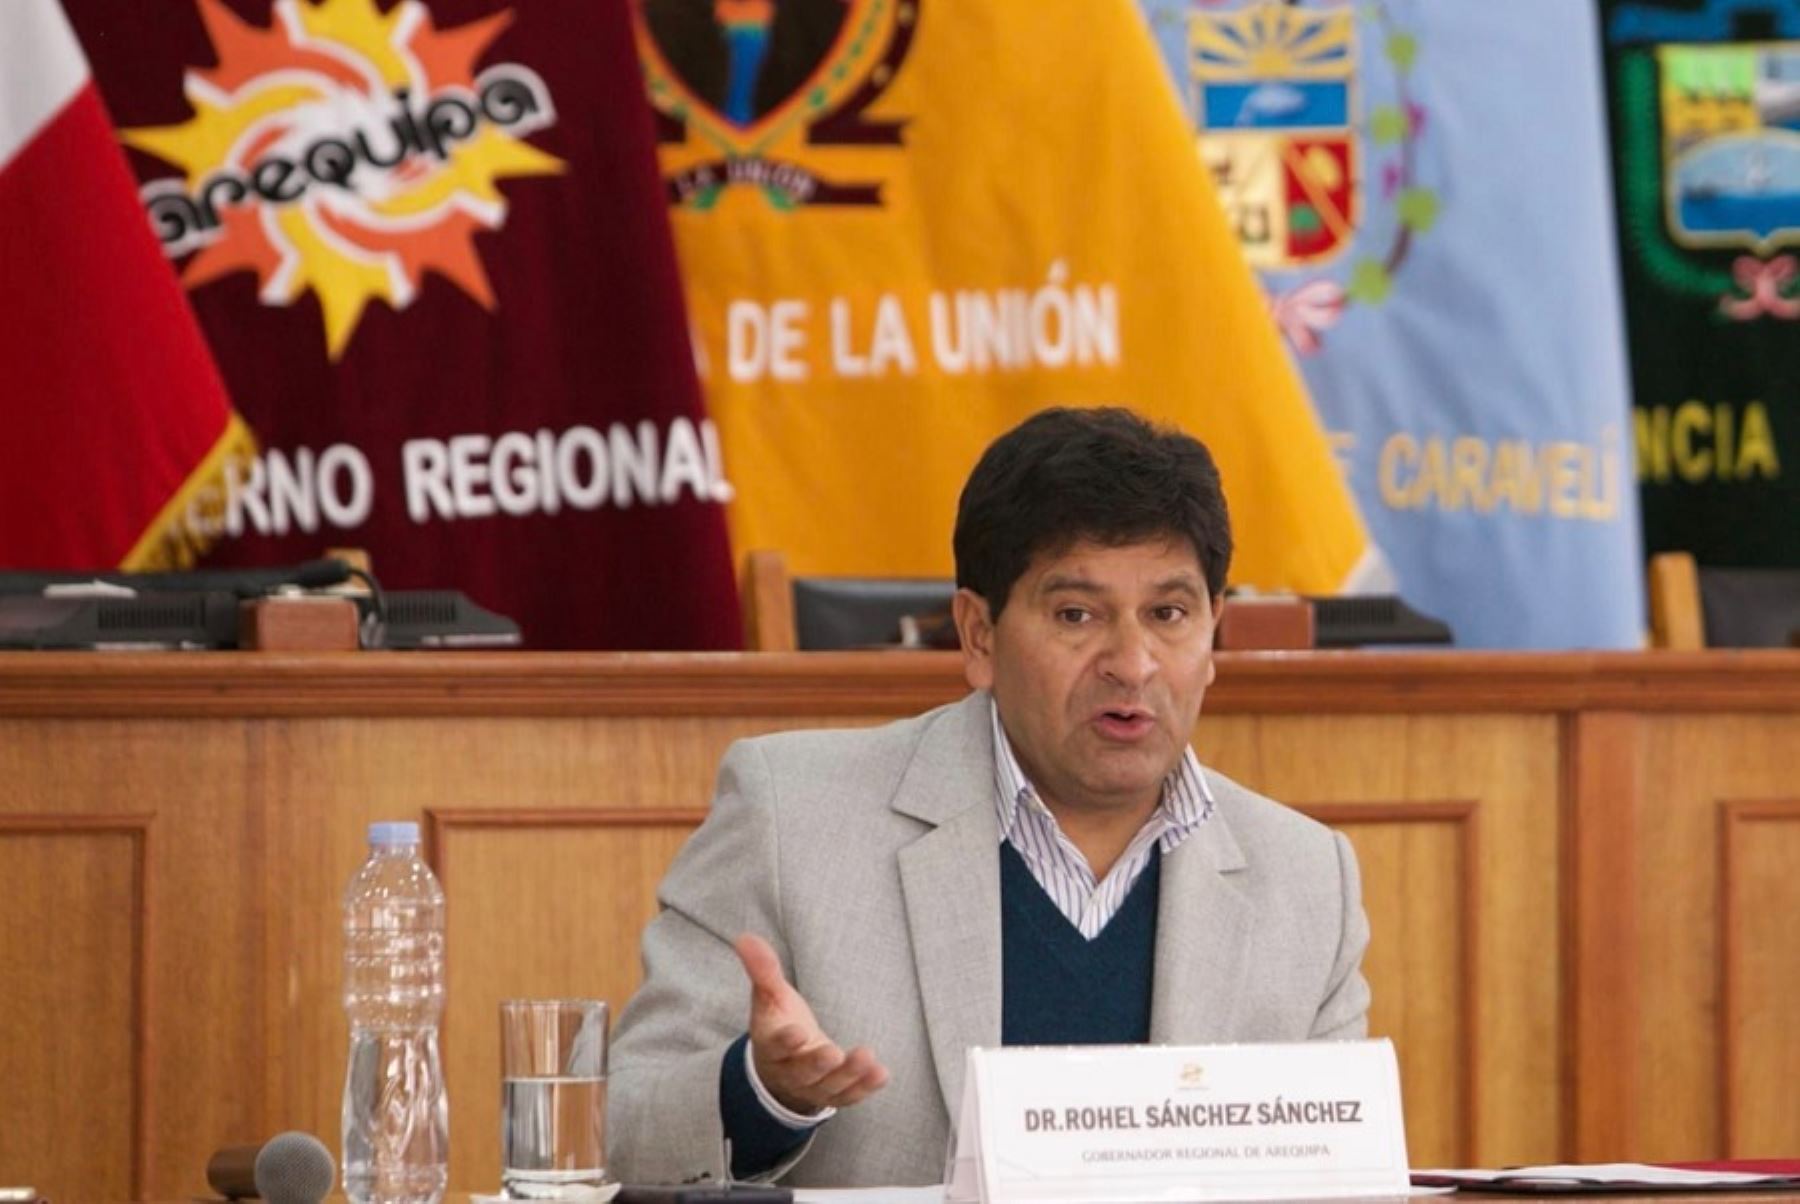 El gobernador regional de Arequipa, Rohel Sánchez, instó a la población de dicho departamento a mantener la paz para garantizar el crecimiento y desarrollo al que aspiran todos los arequipeños.